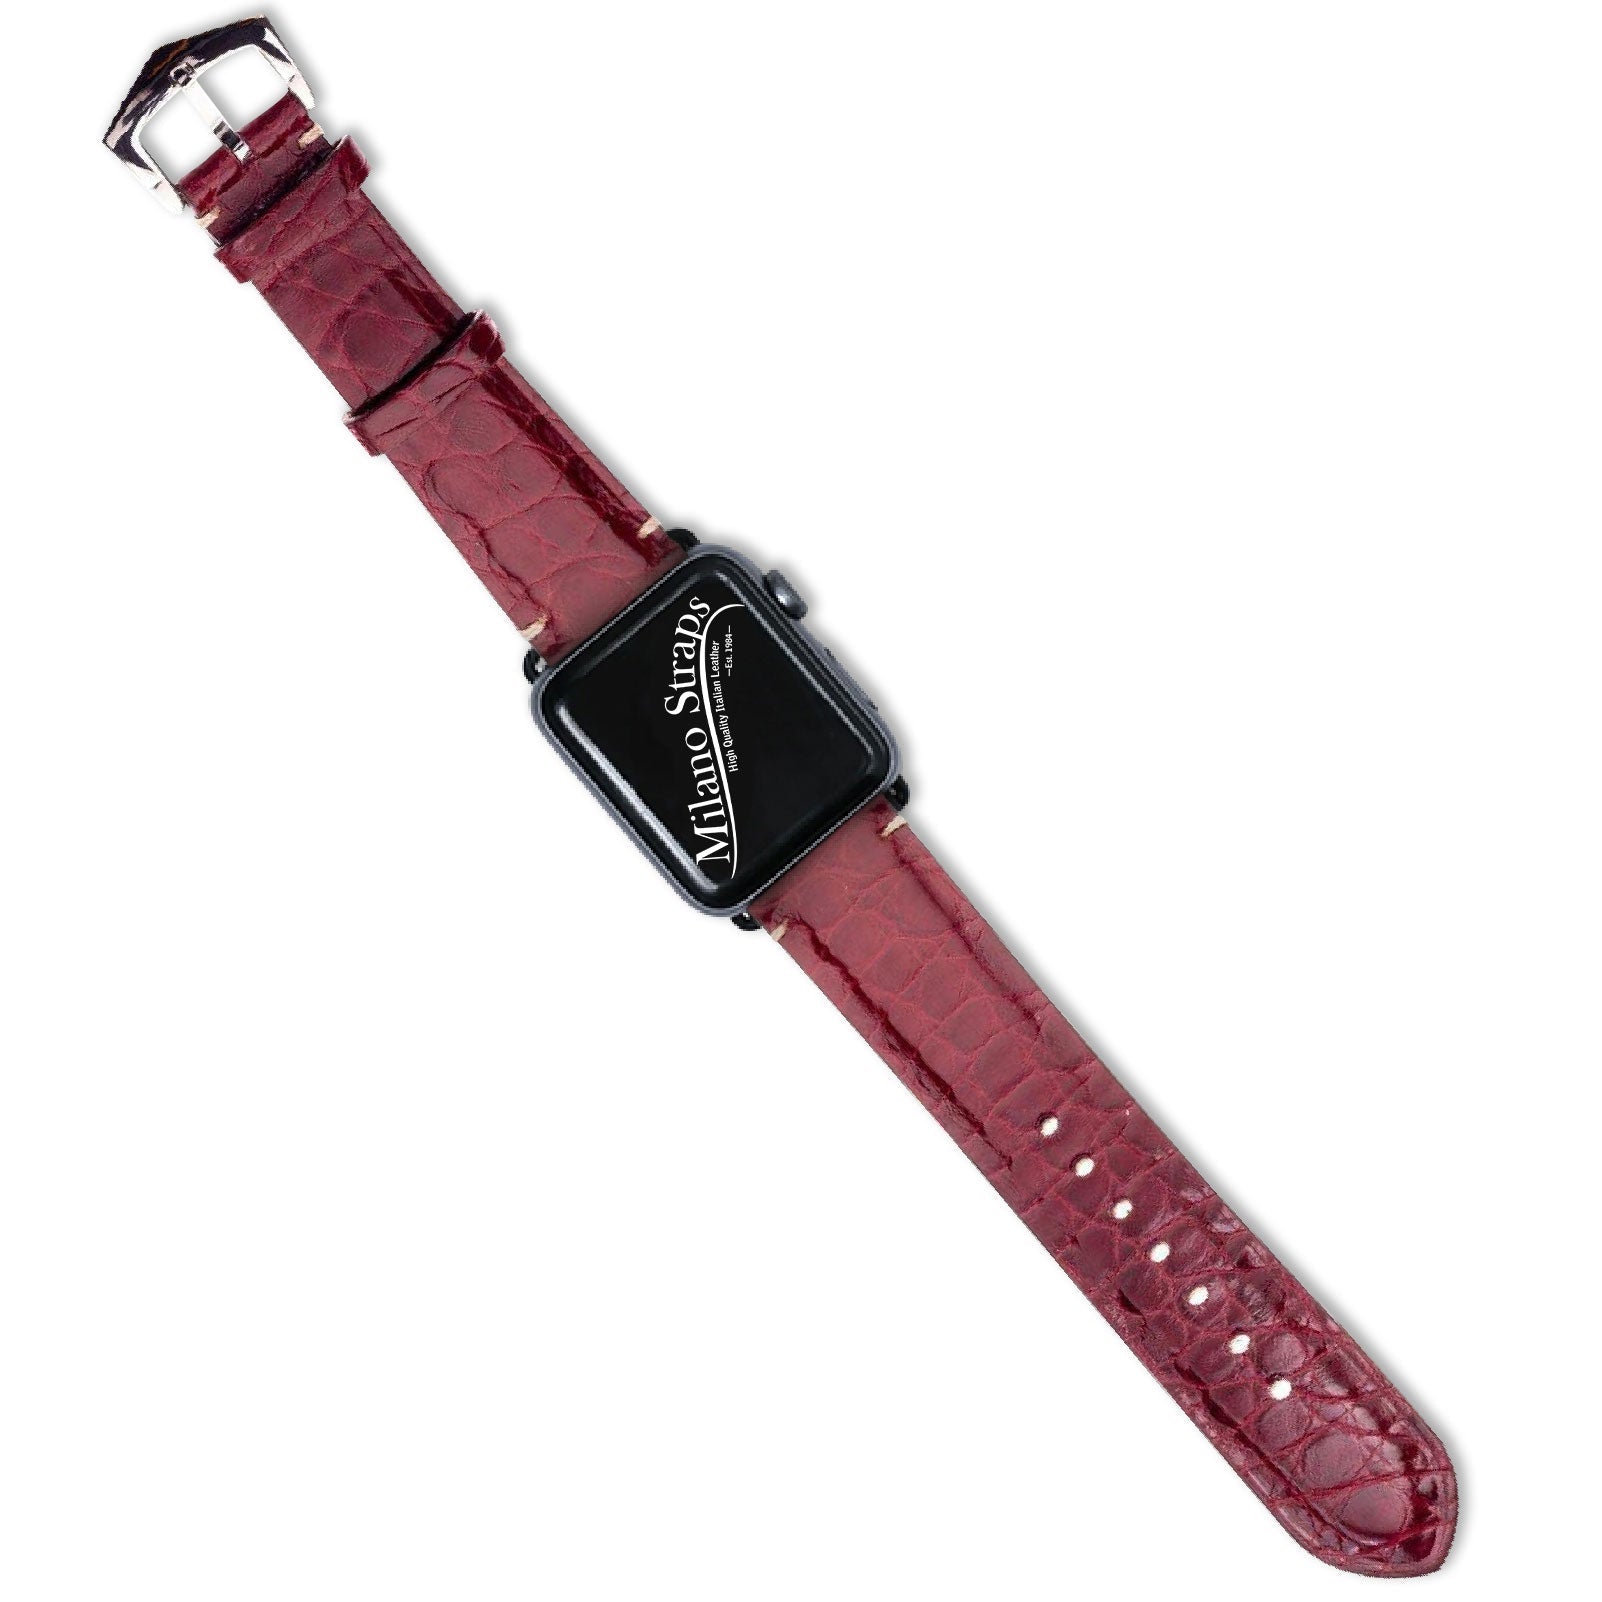 Apple Watch Leather Band ™ Burgundy Millennium Alligator Minimal Stitches Watch Band - Milano Straps